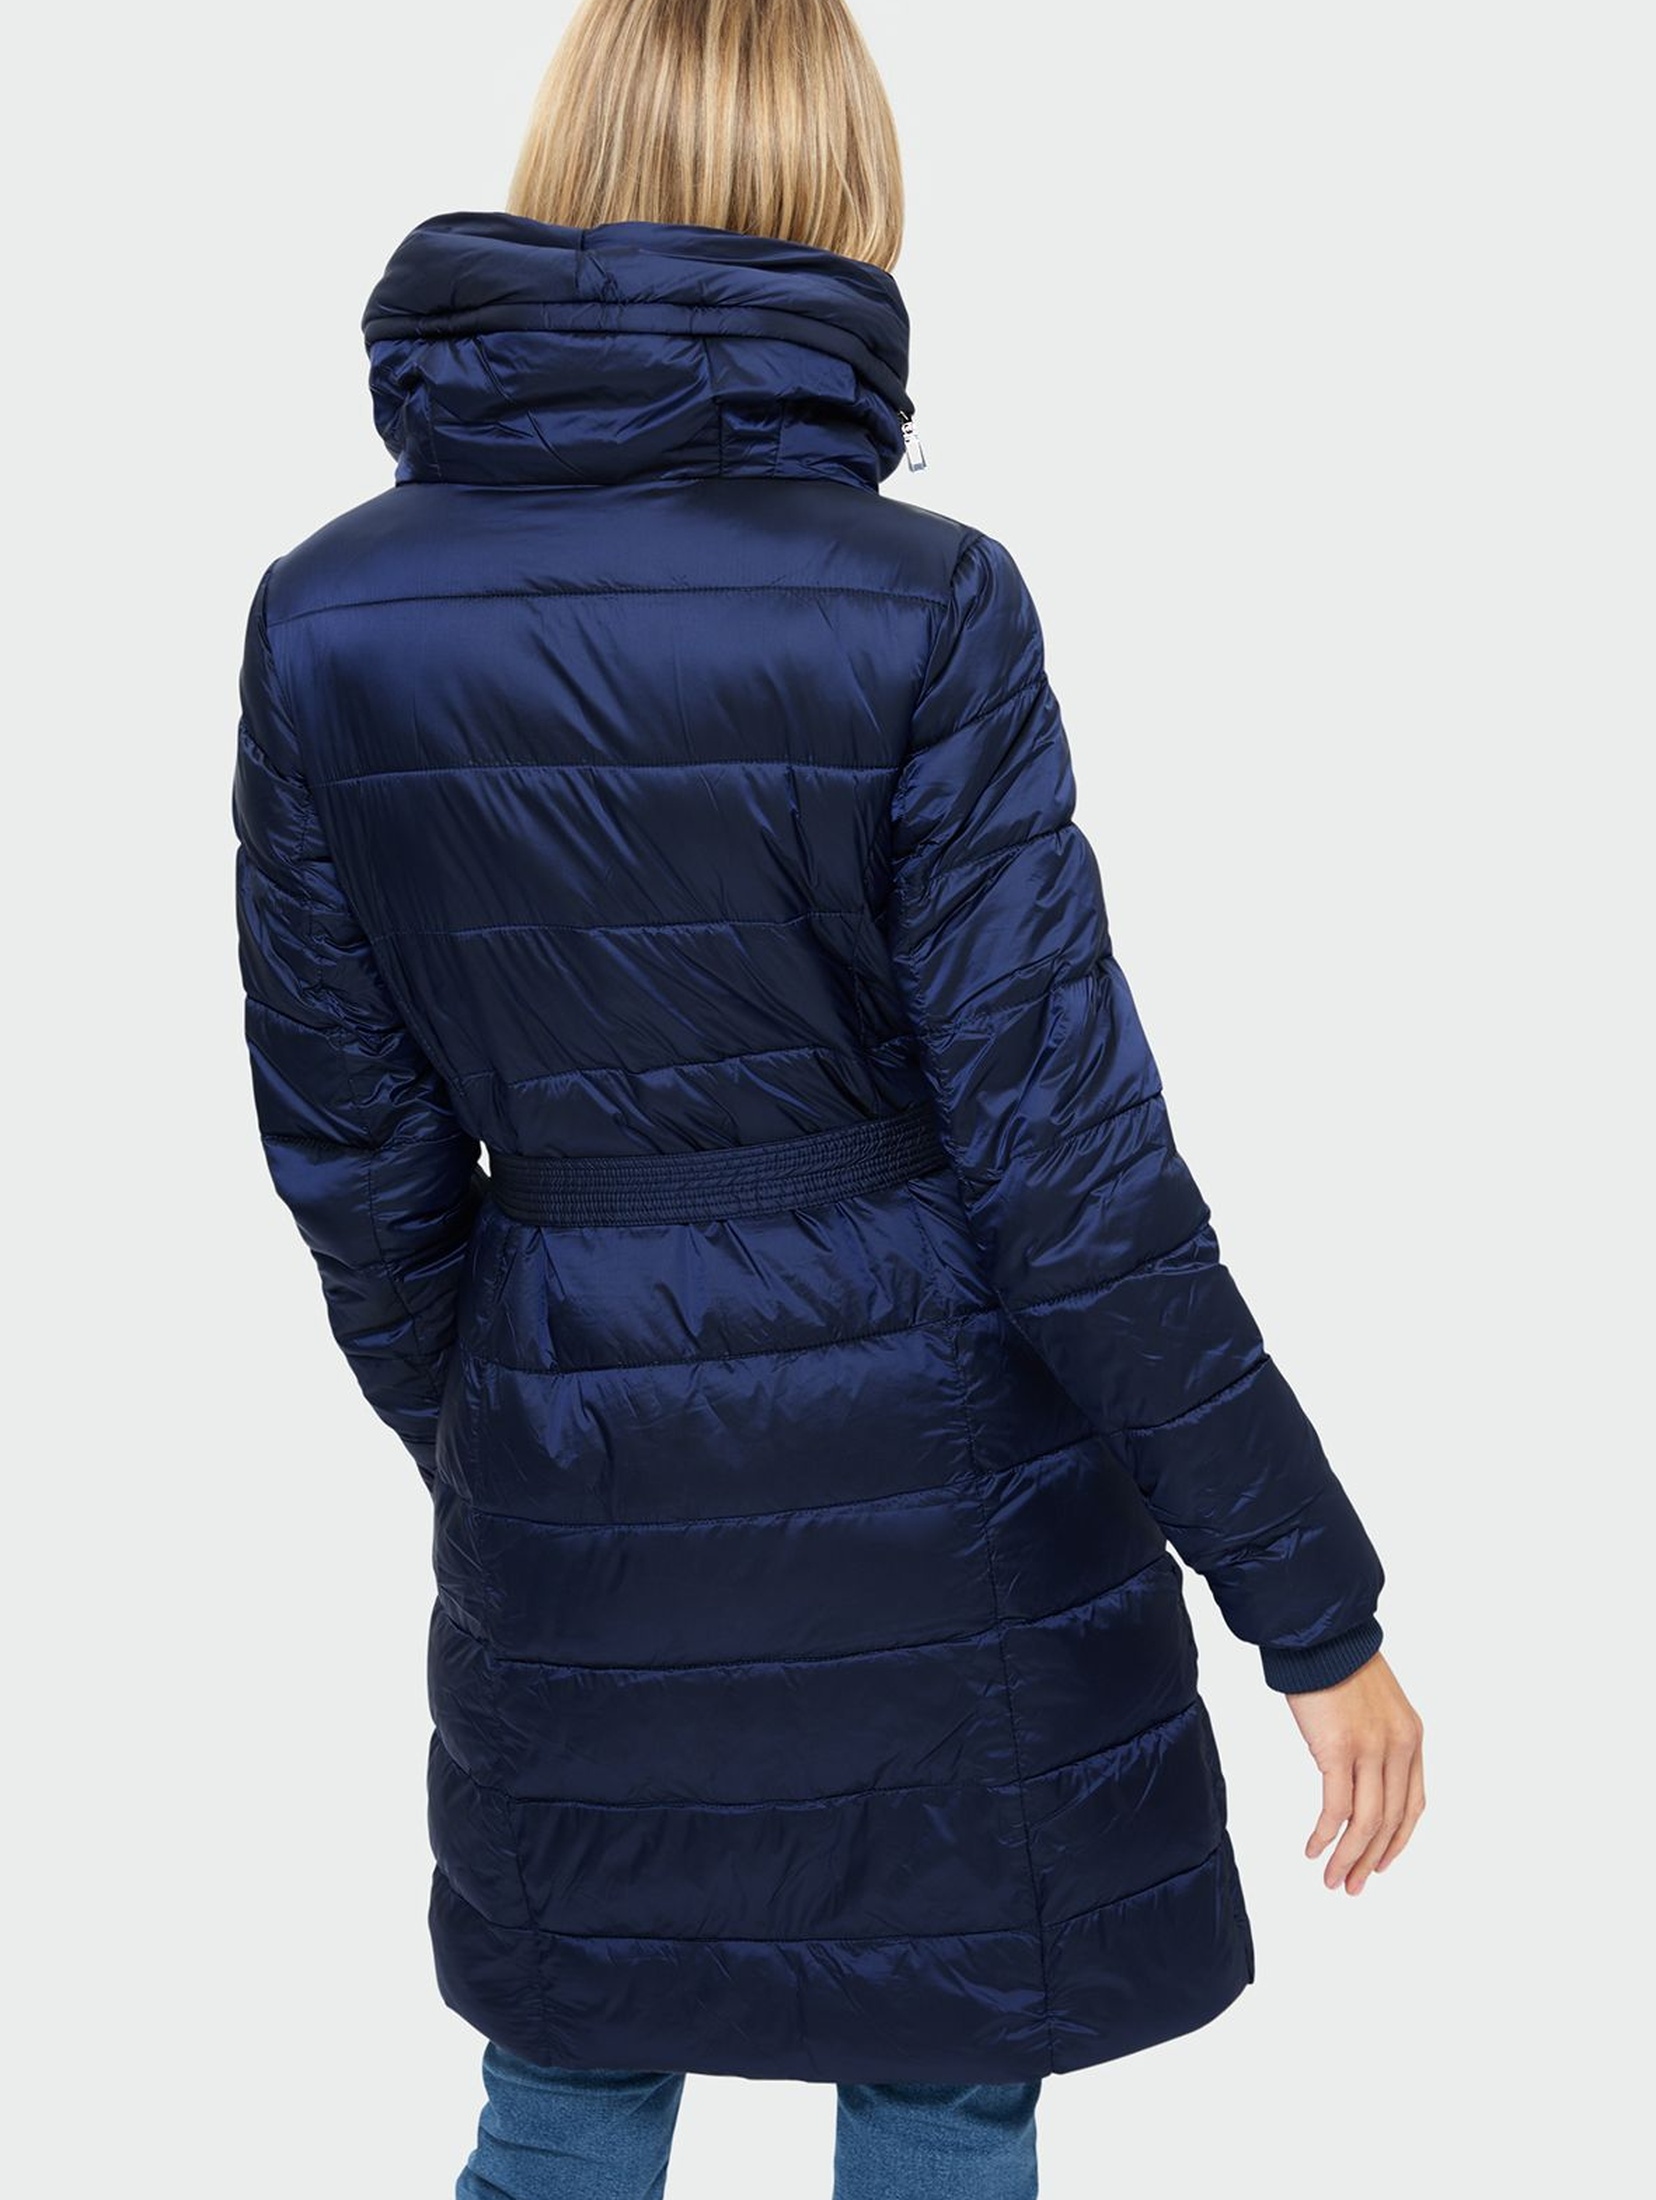 Granatowy pikowany płaszcz damski rozmiar 34